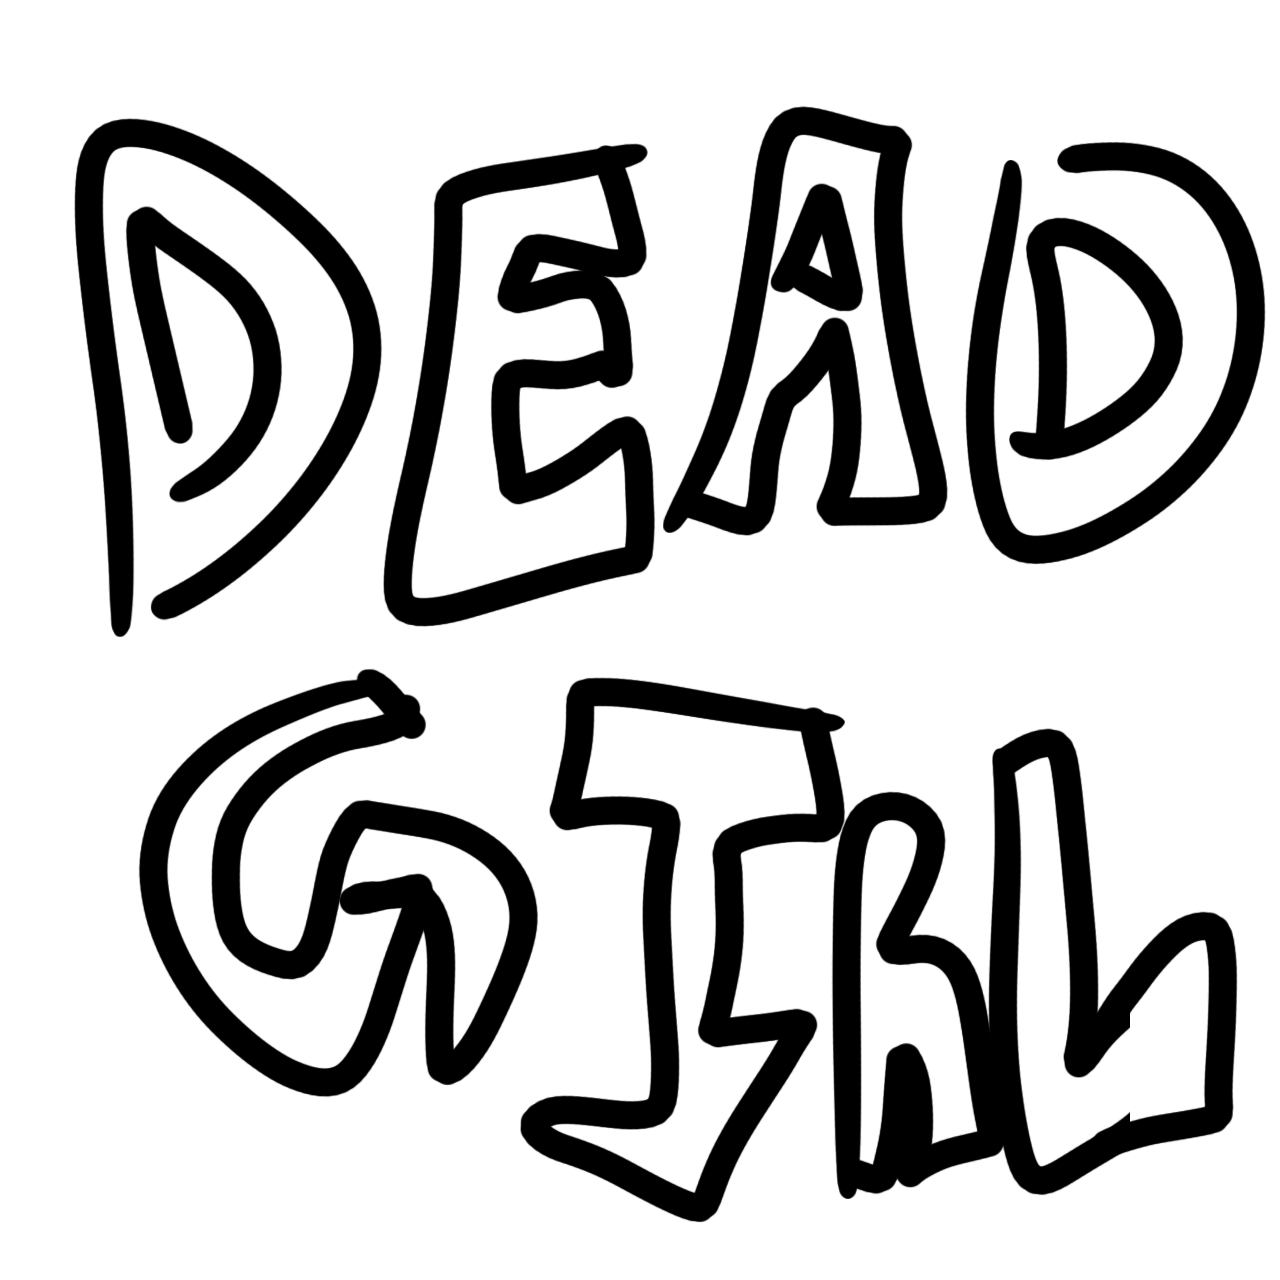 Dead girl | WEBTOON